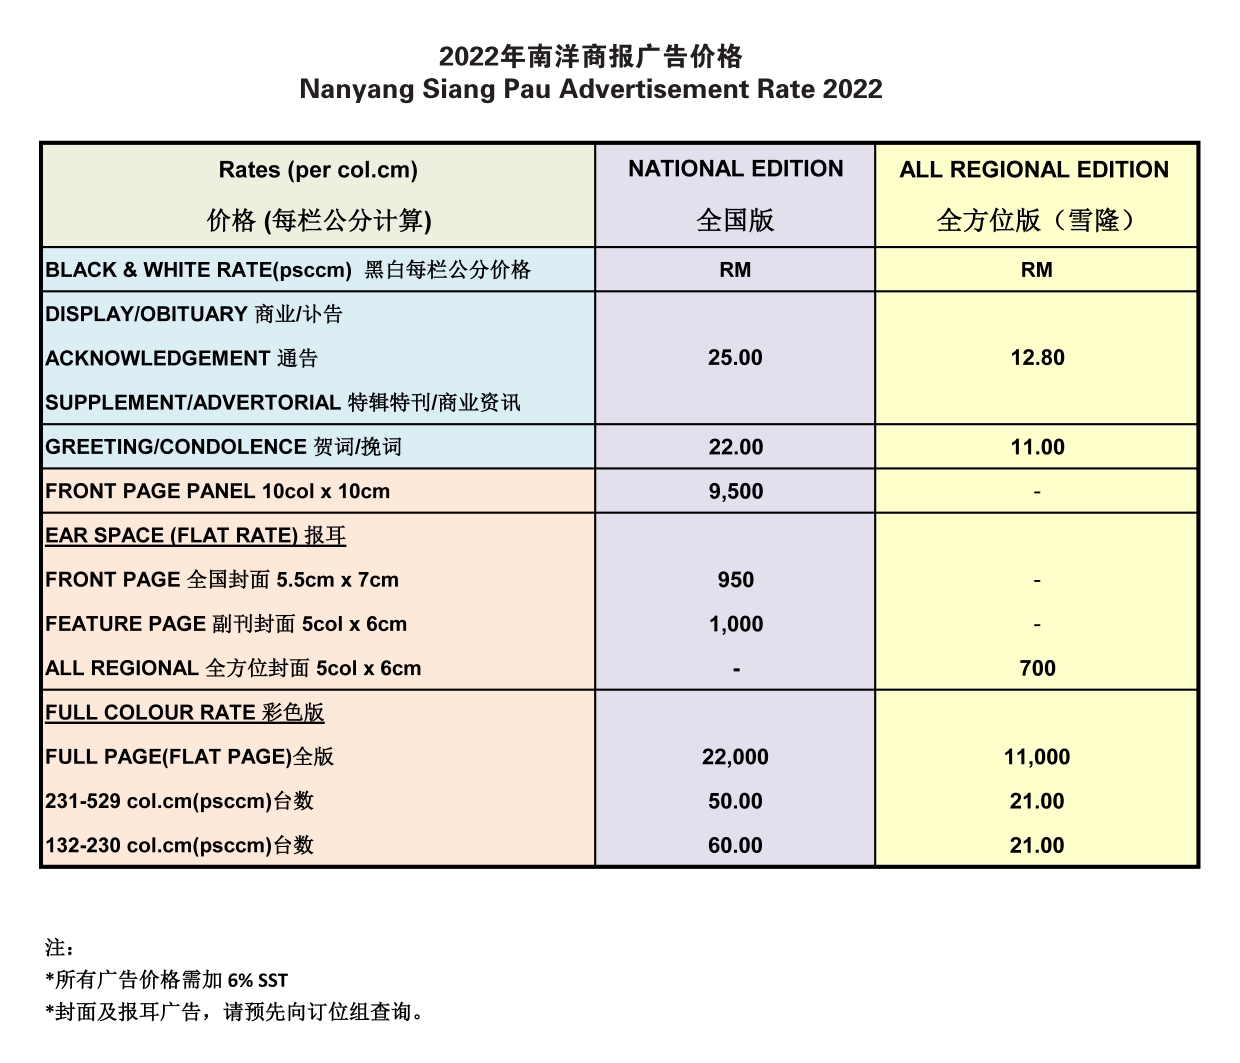 Nanyang Siang Pau Advertisement Rate Card 2022